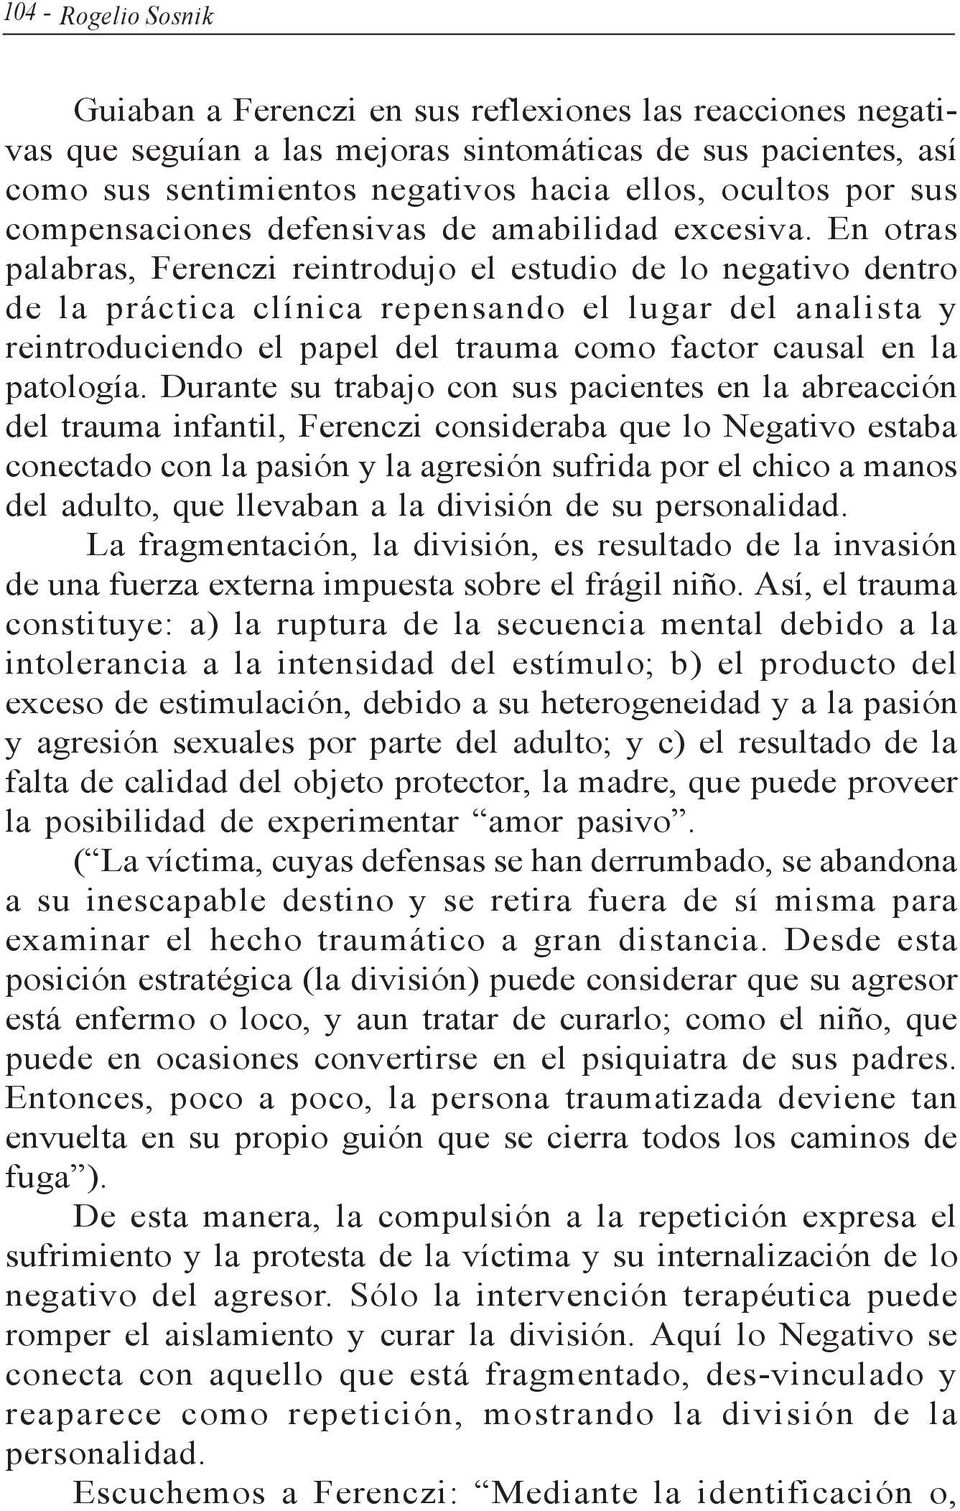 En otras palabras, Ferenczi reintrodujo el estudio de lo negativo dentro de la práctica clínica repensando el lugar del analista y reintroduciendo el papel del trauma como factor causal en la